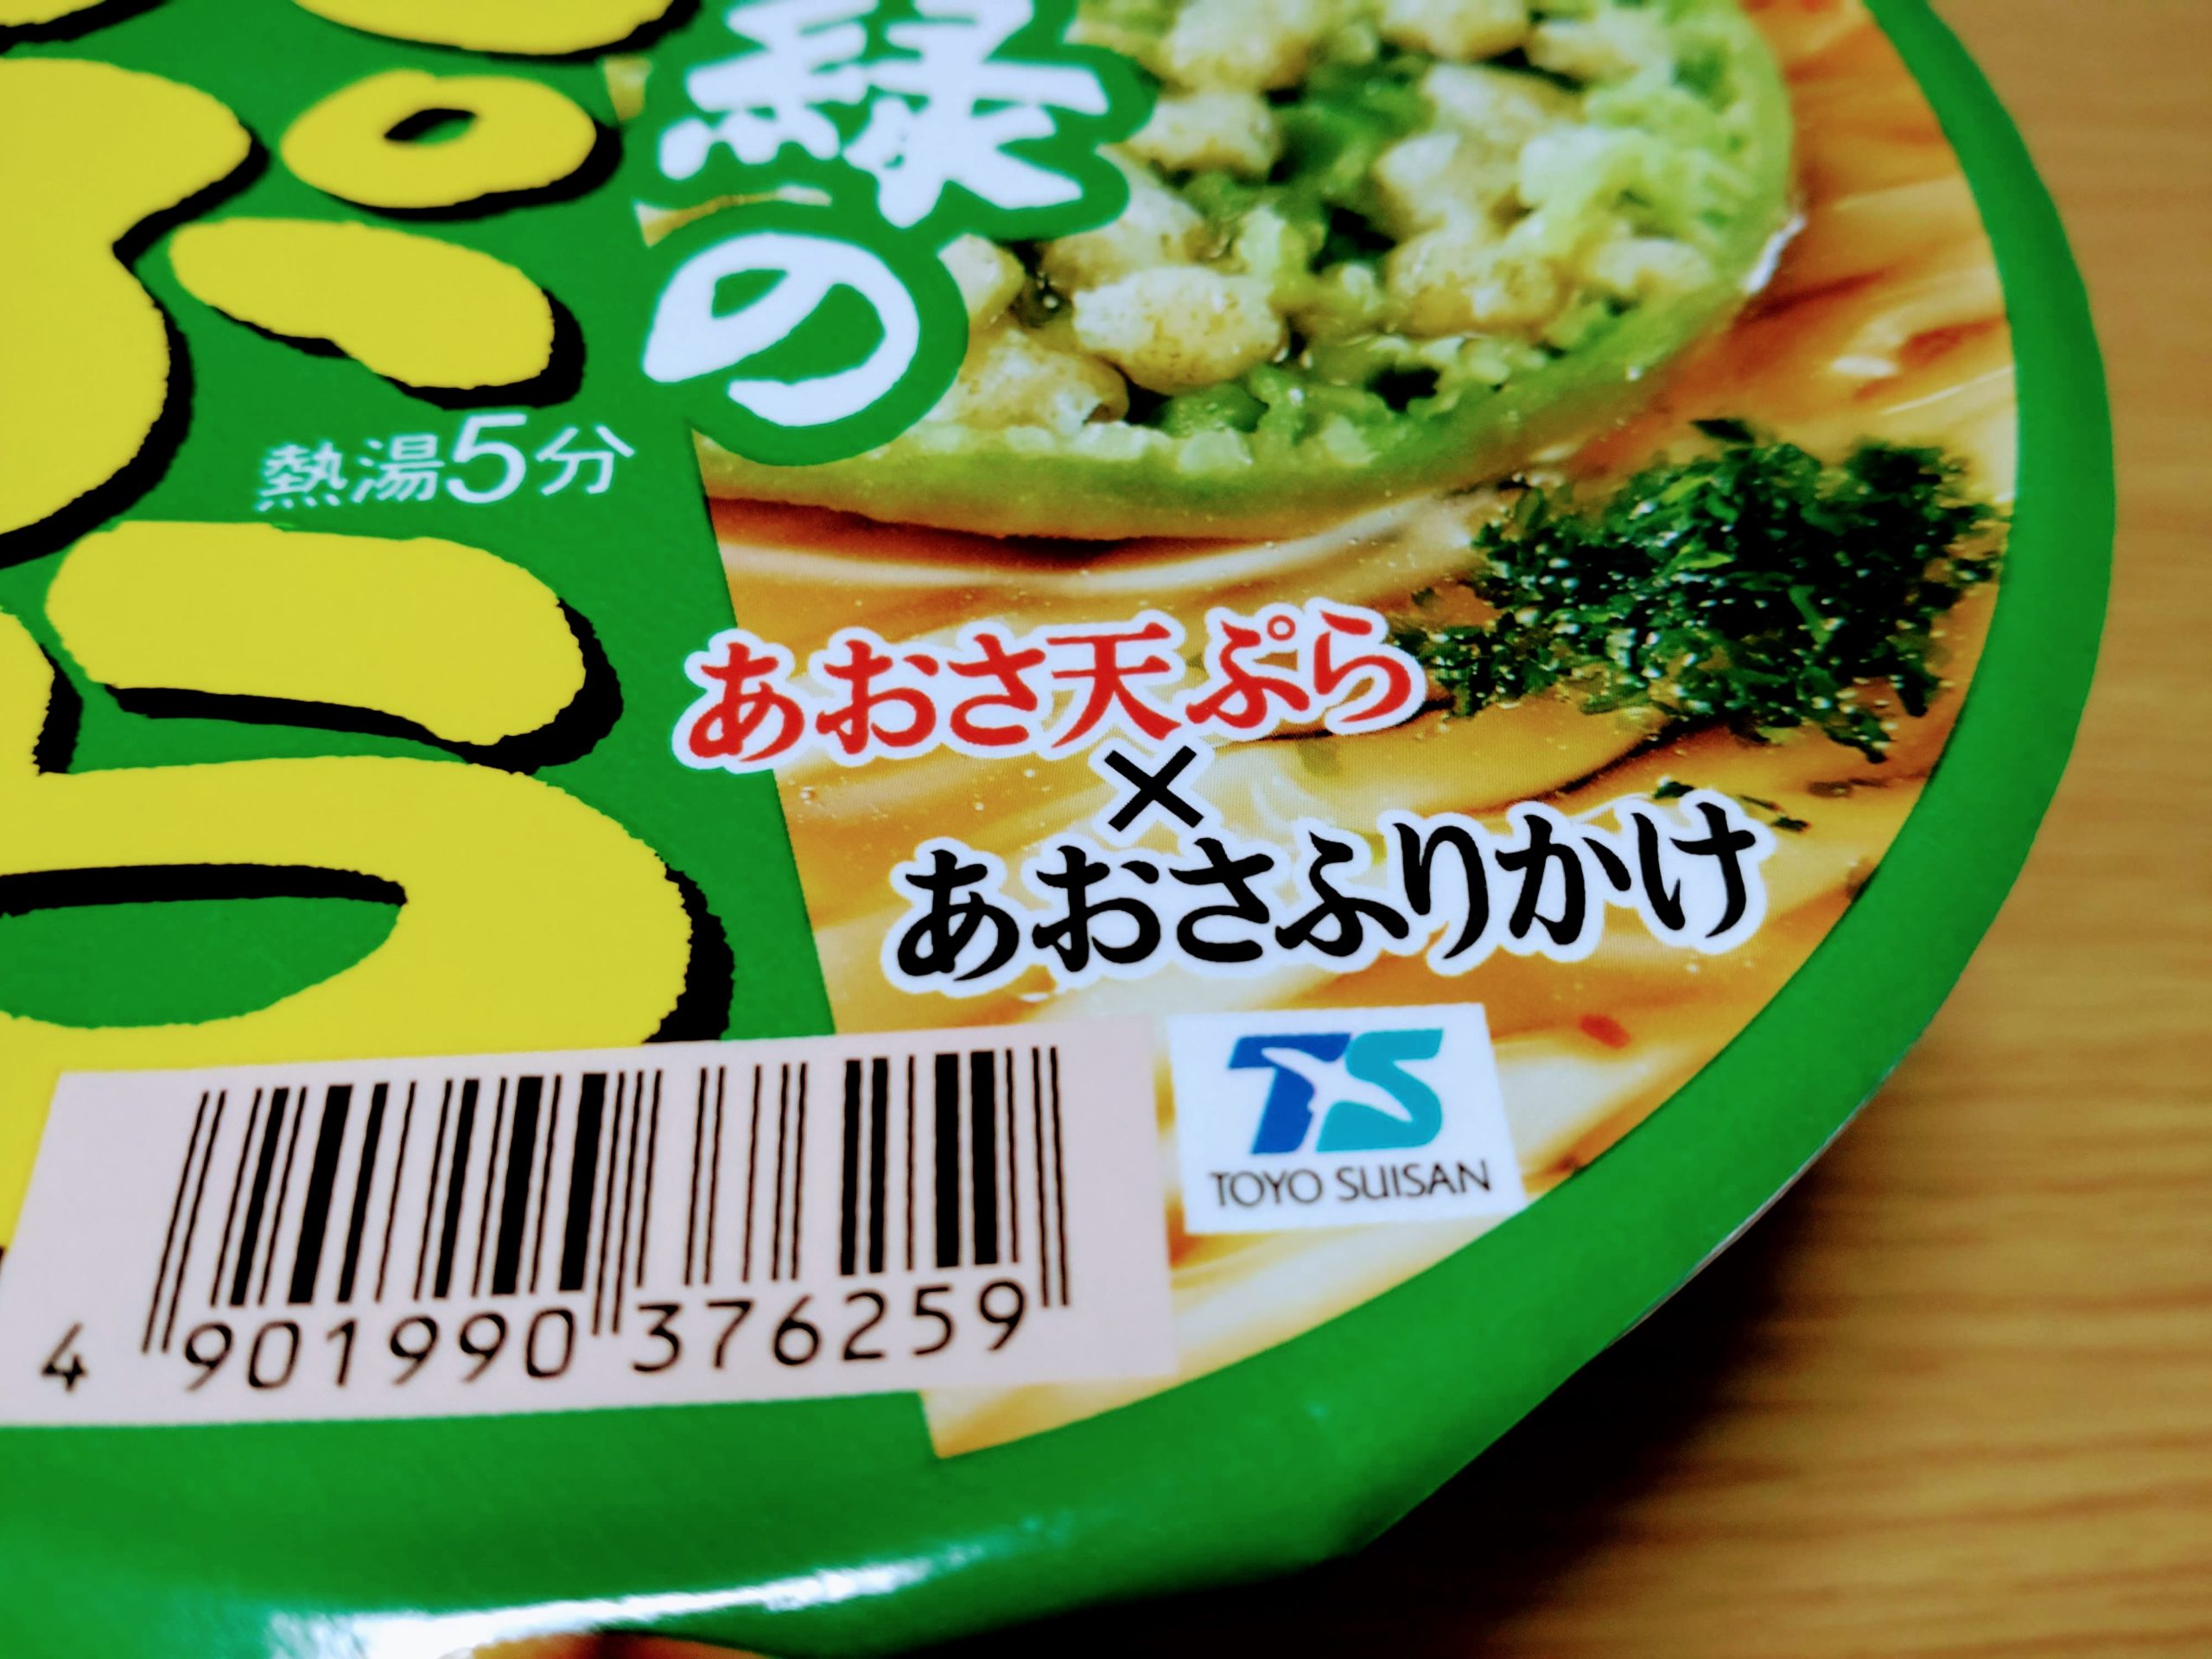 マルちゃん 緑の天ぷらうどんのパッケージ